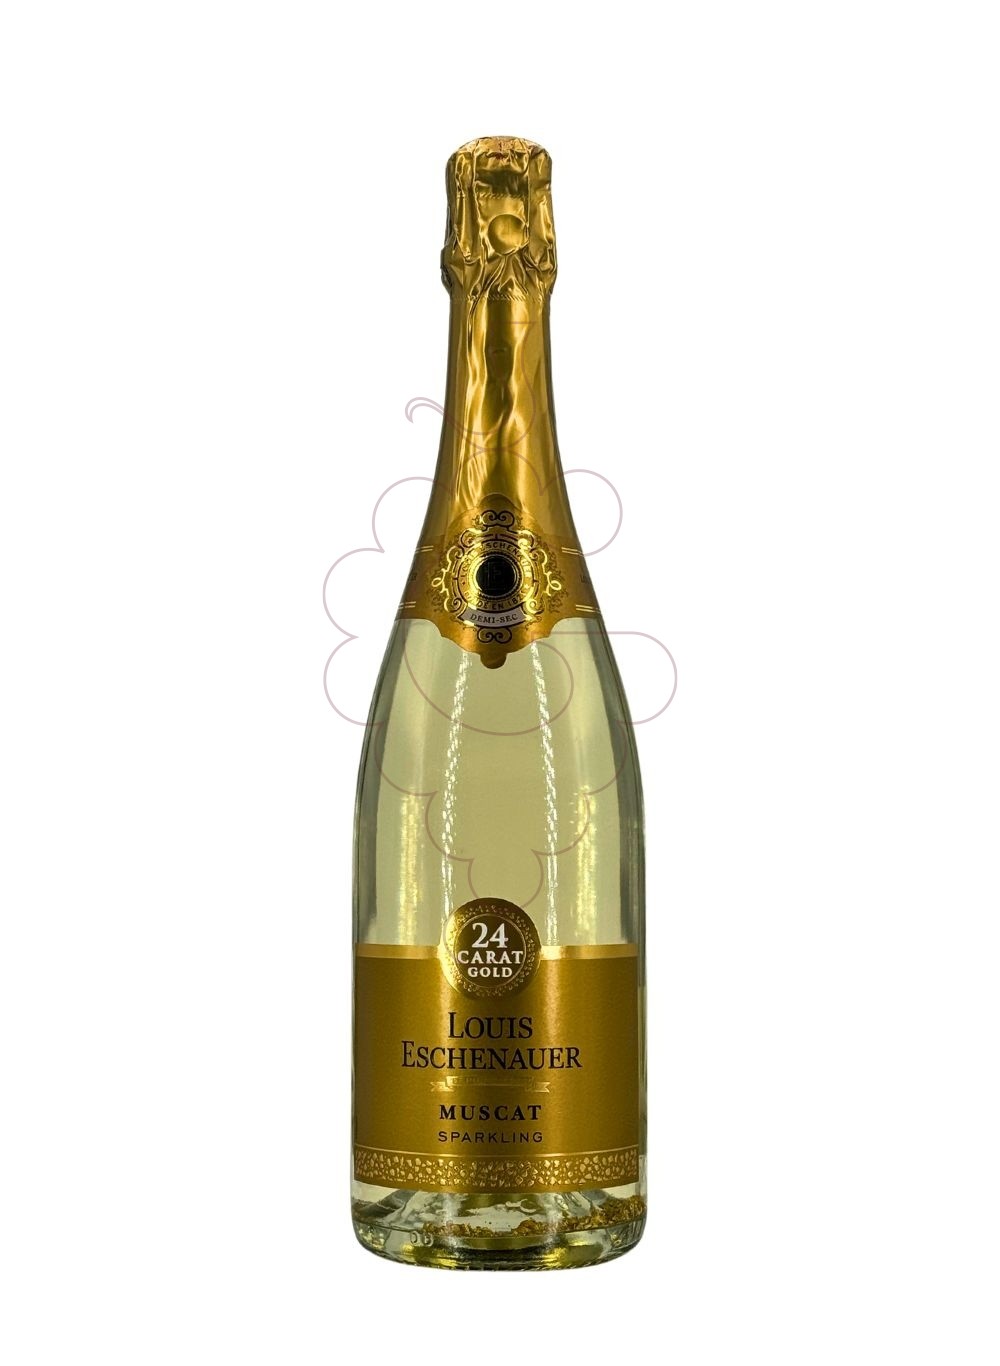 Photo Louis eschenauer 24 carat gold sparkling wine